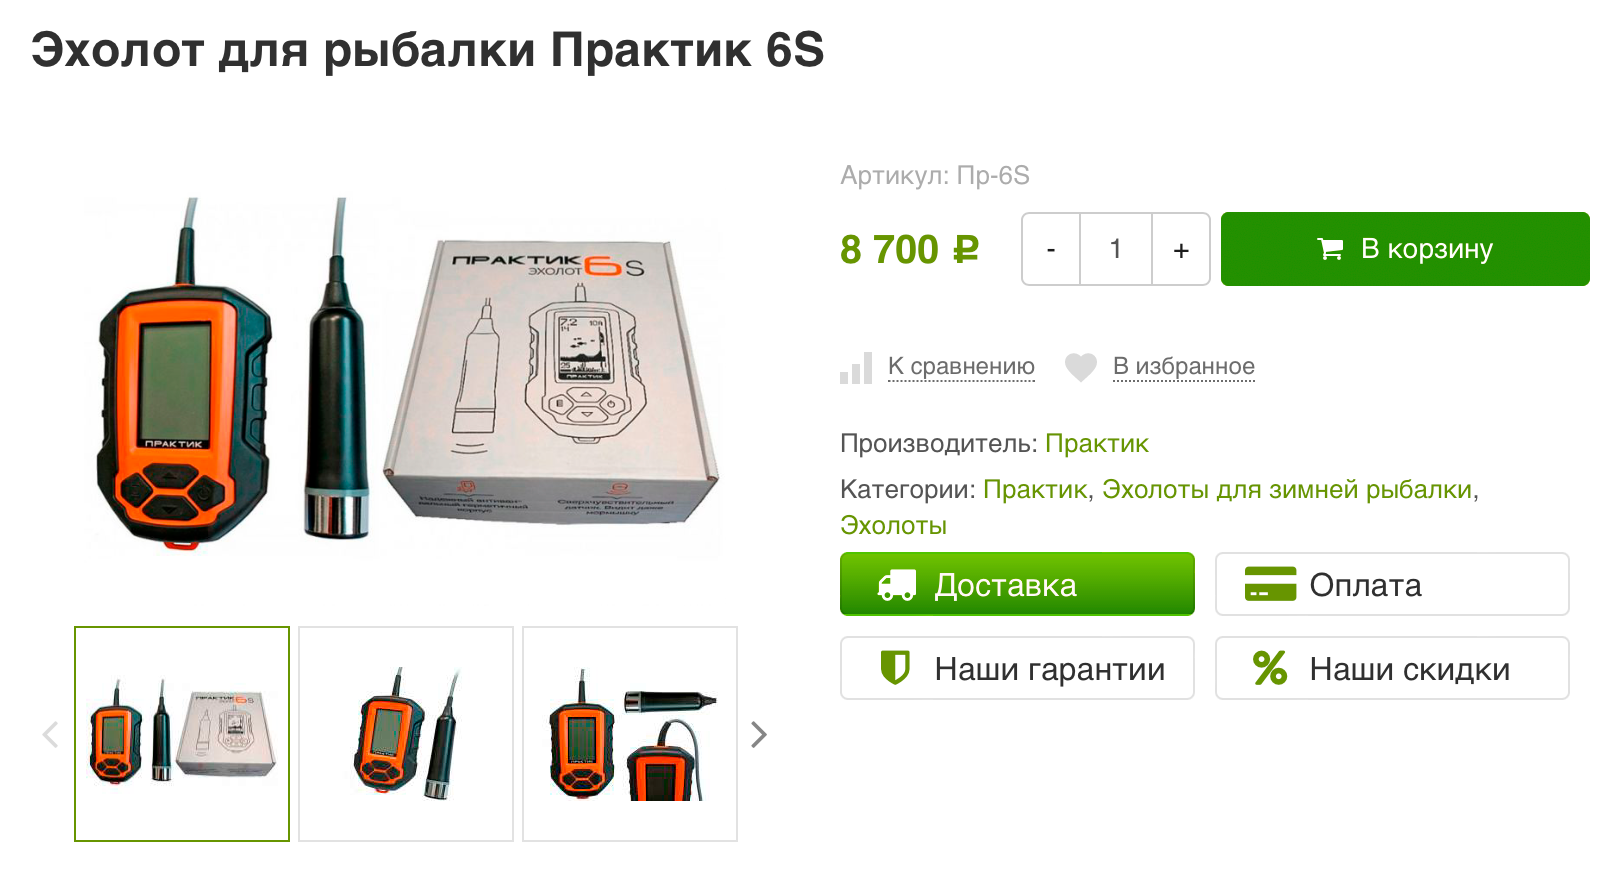 Самый простой эхолот обойдется в 8700 ₽. Источник: rybolovnyi.ru